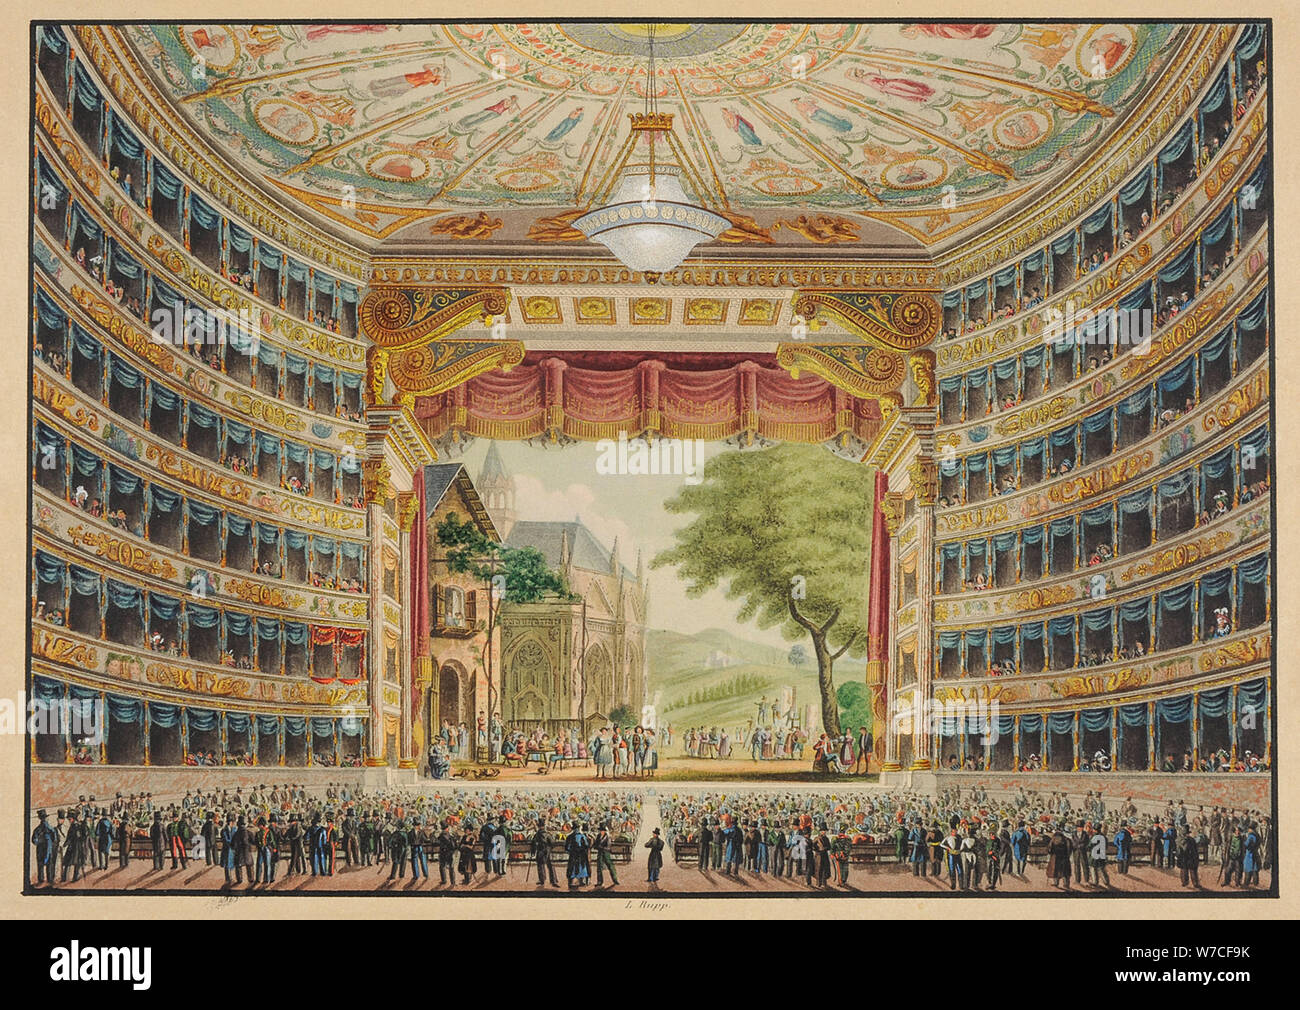 La Scala opera house in Milan, Festive Interior, 1830. Stock Photo